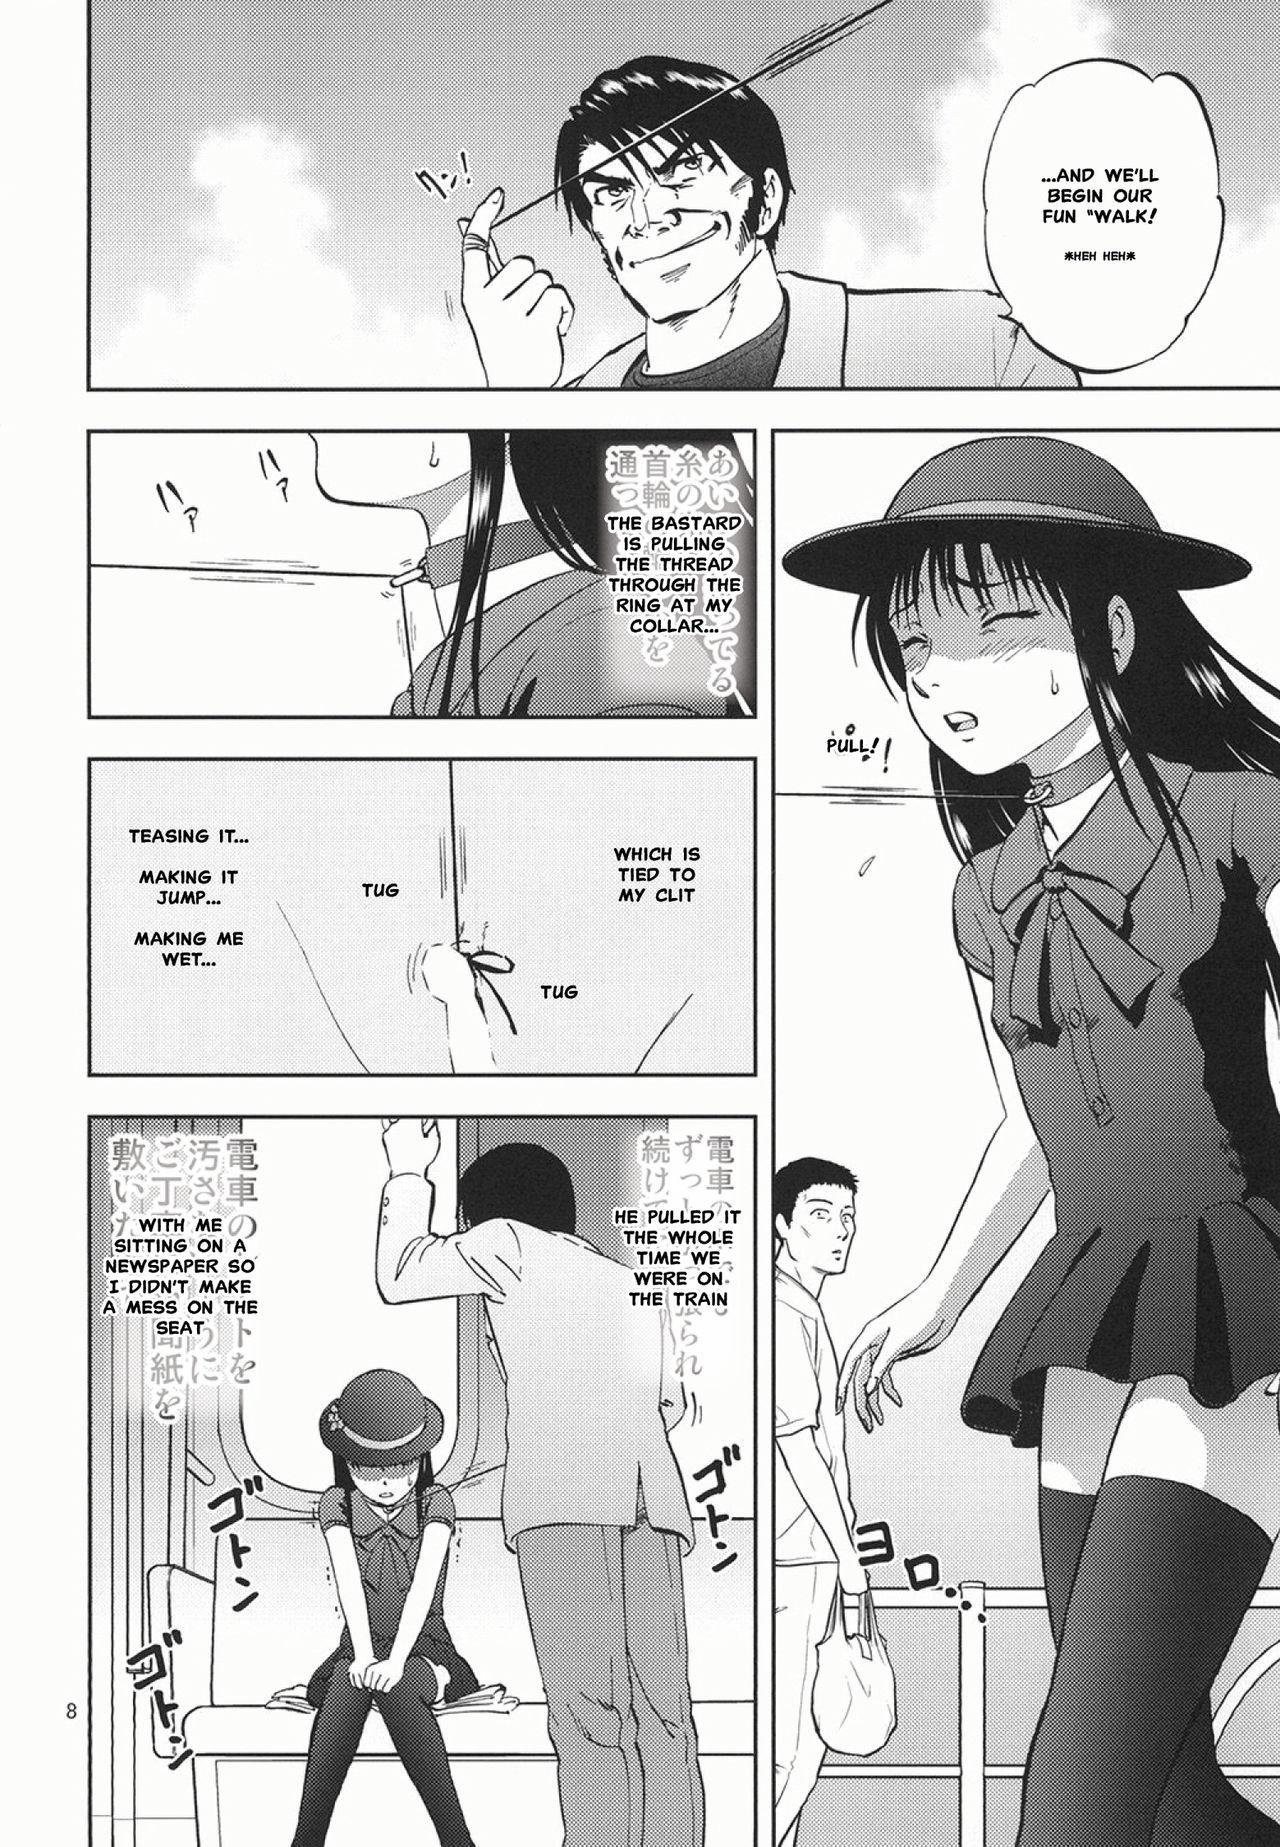 Love Ura Kuri Hiroi 6 | Picking Chestnuts - Eriko's Story Part 6 Hardcore - Page 5